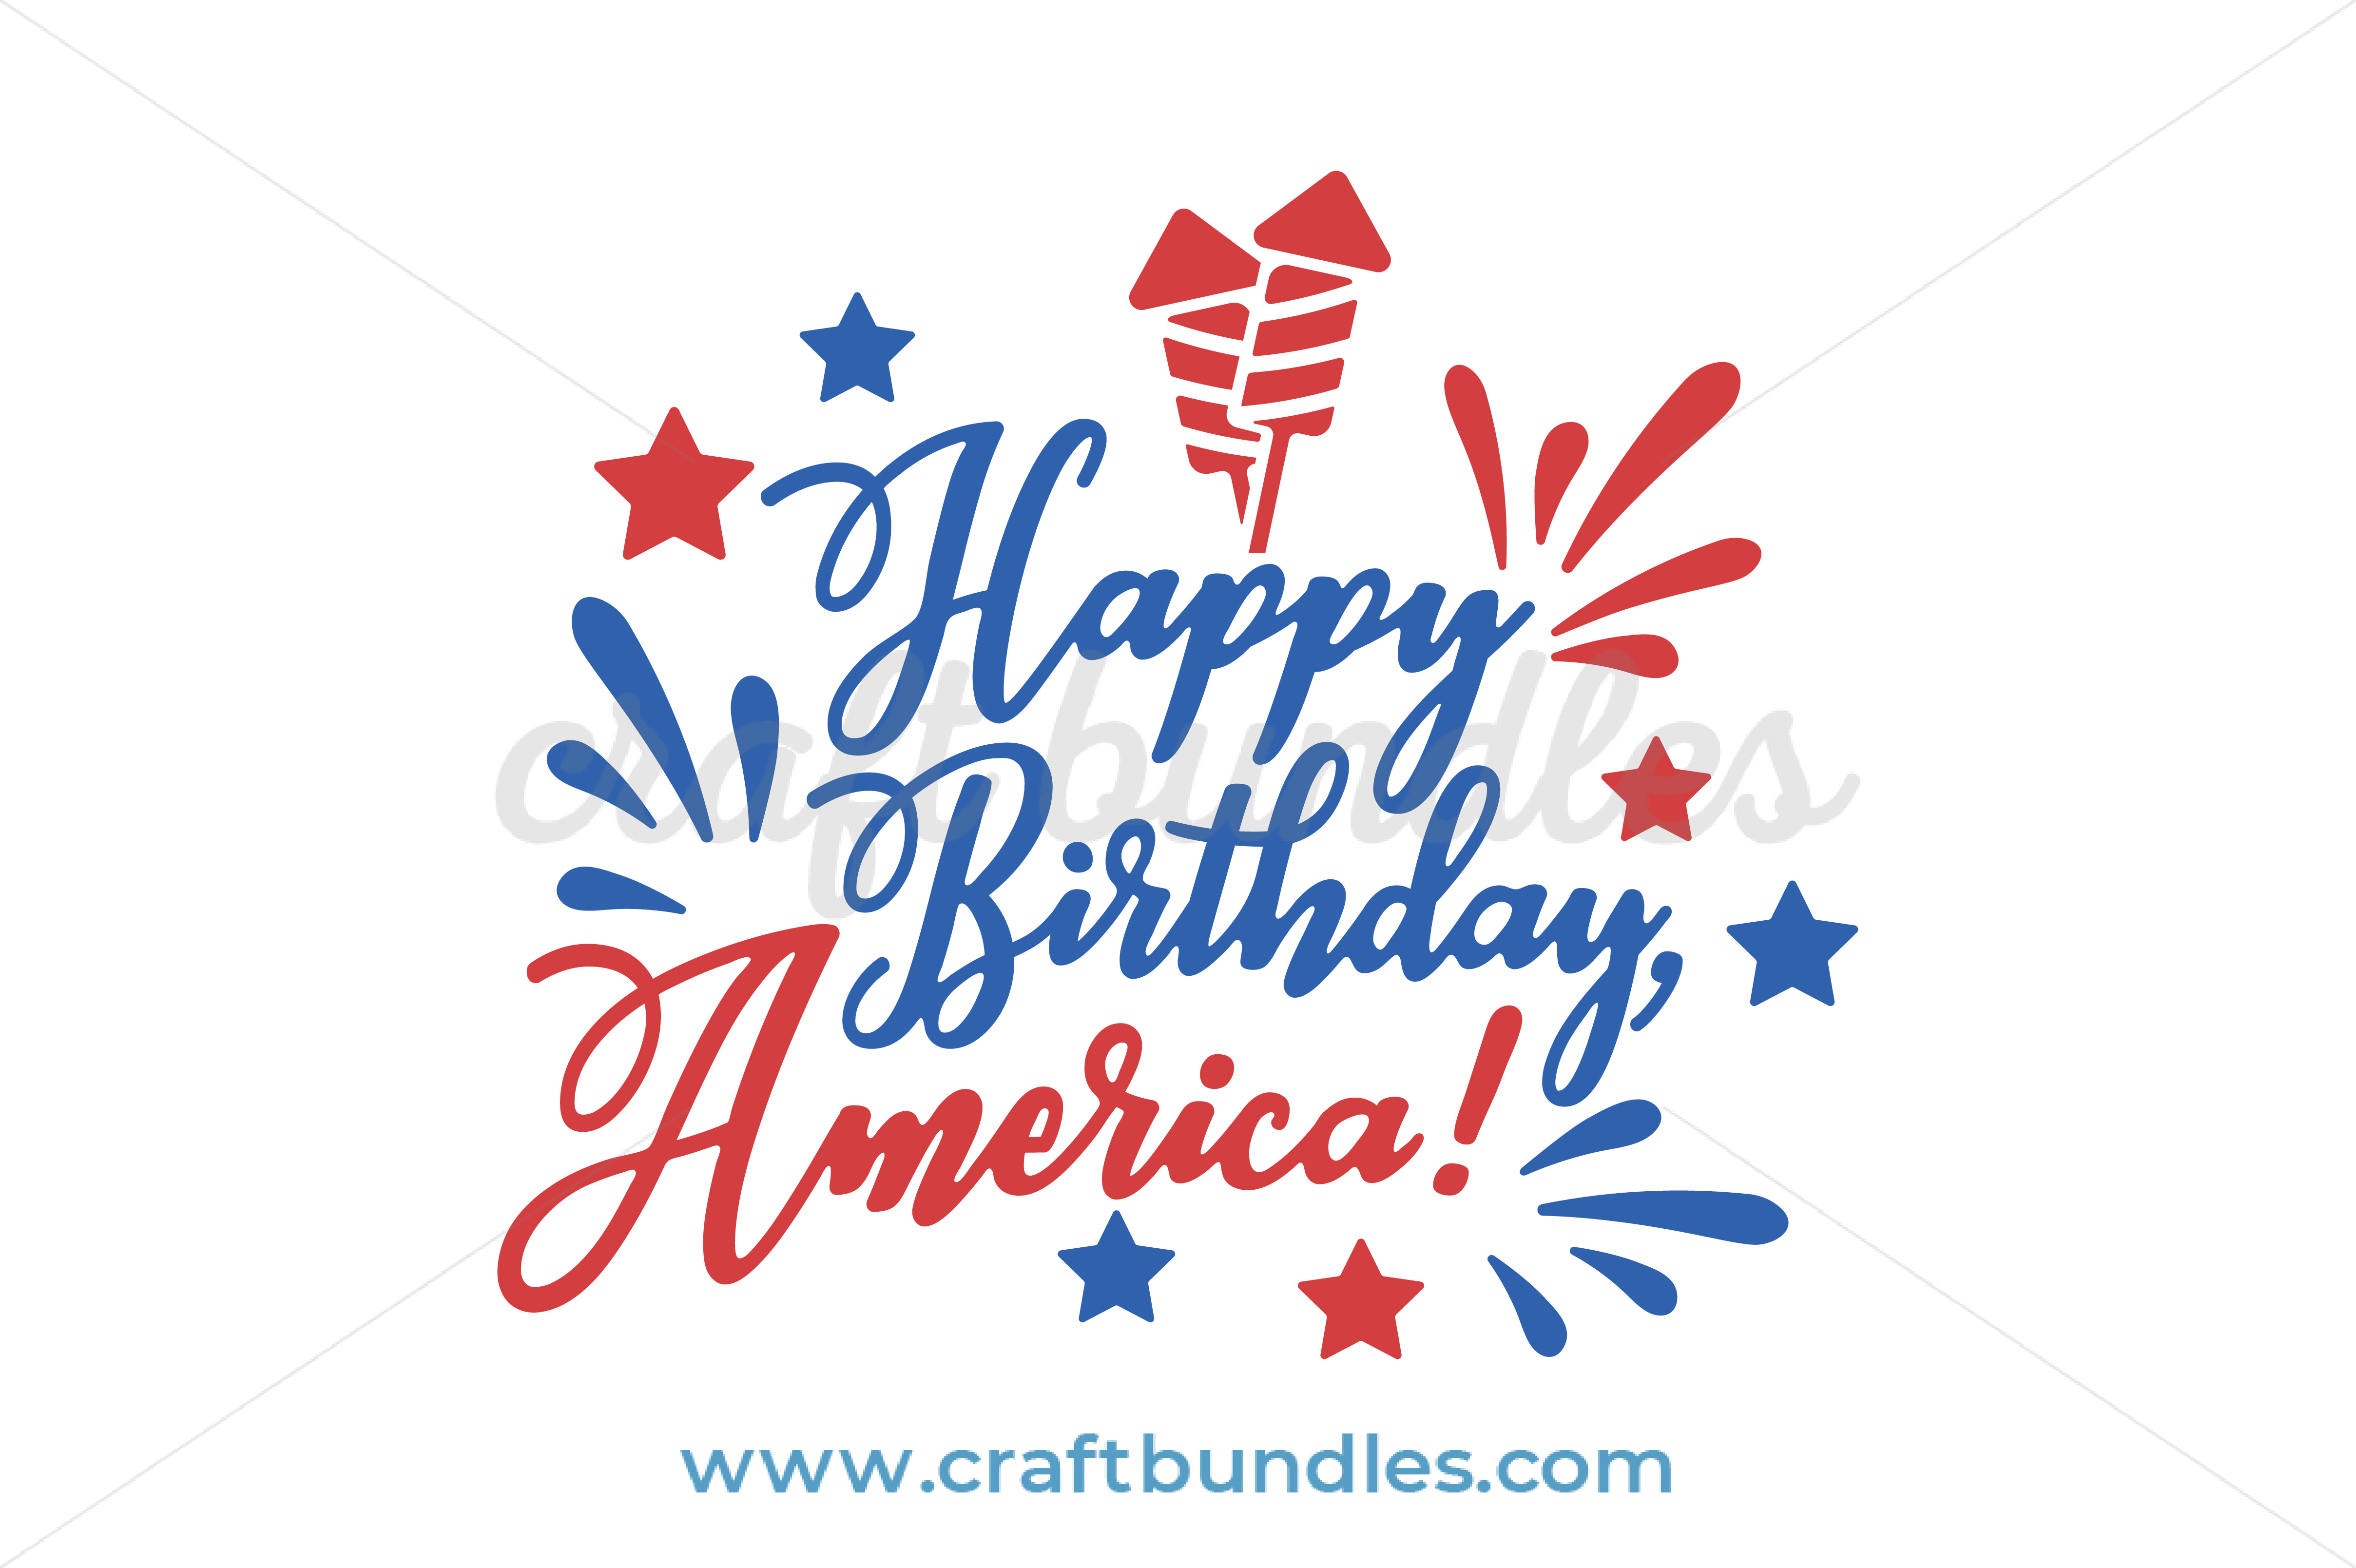 Happy Birthday America SVG Cut File by CraftBundles.com.